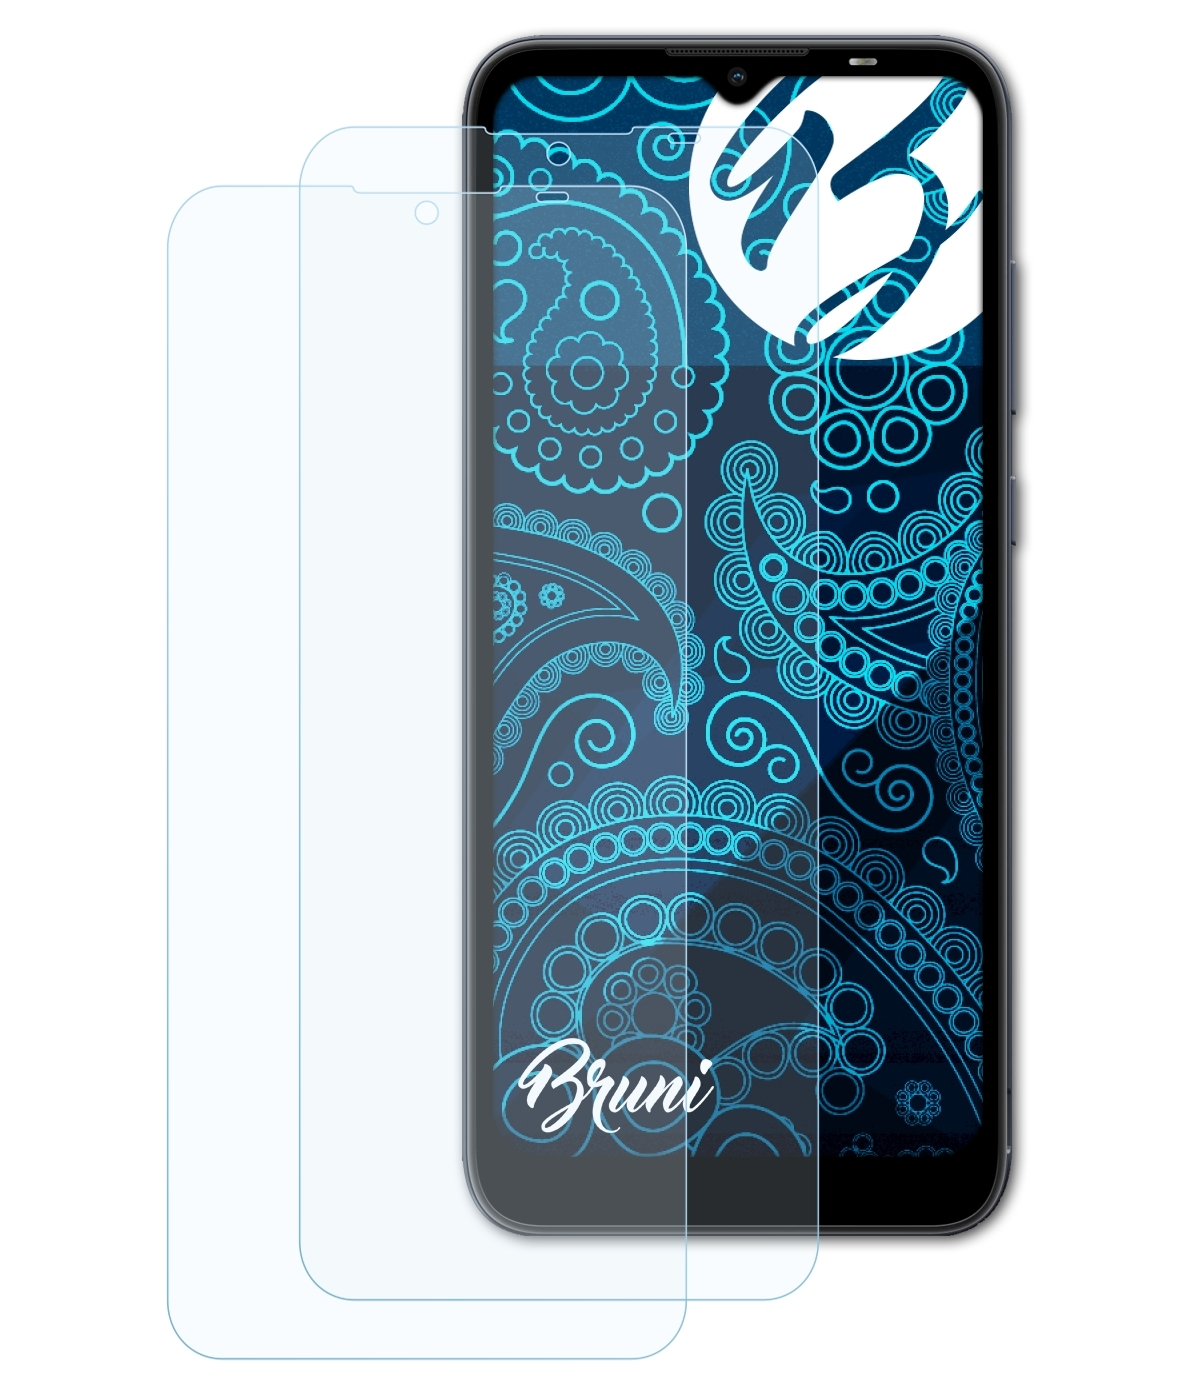 BRUNI 2x Basics-Clear Schutzfolie(für Nokia C20)